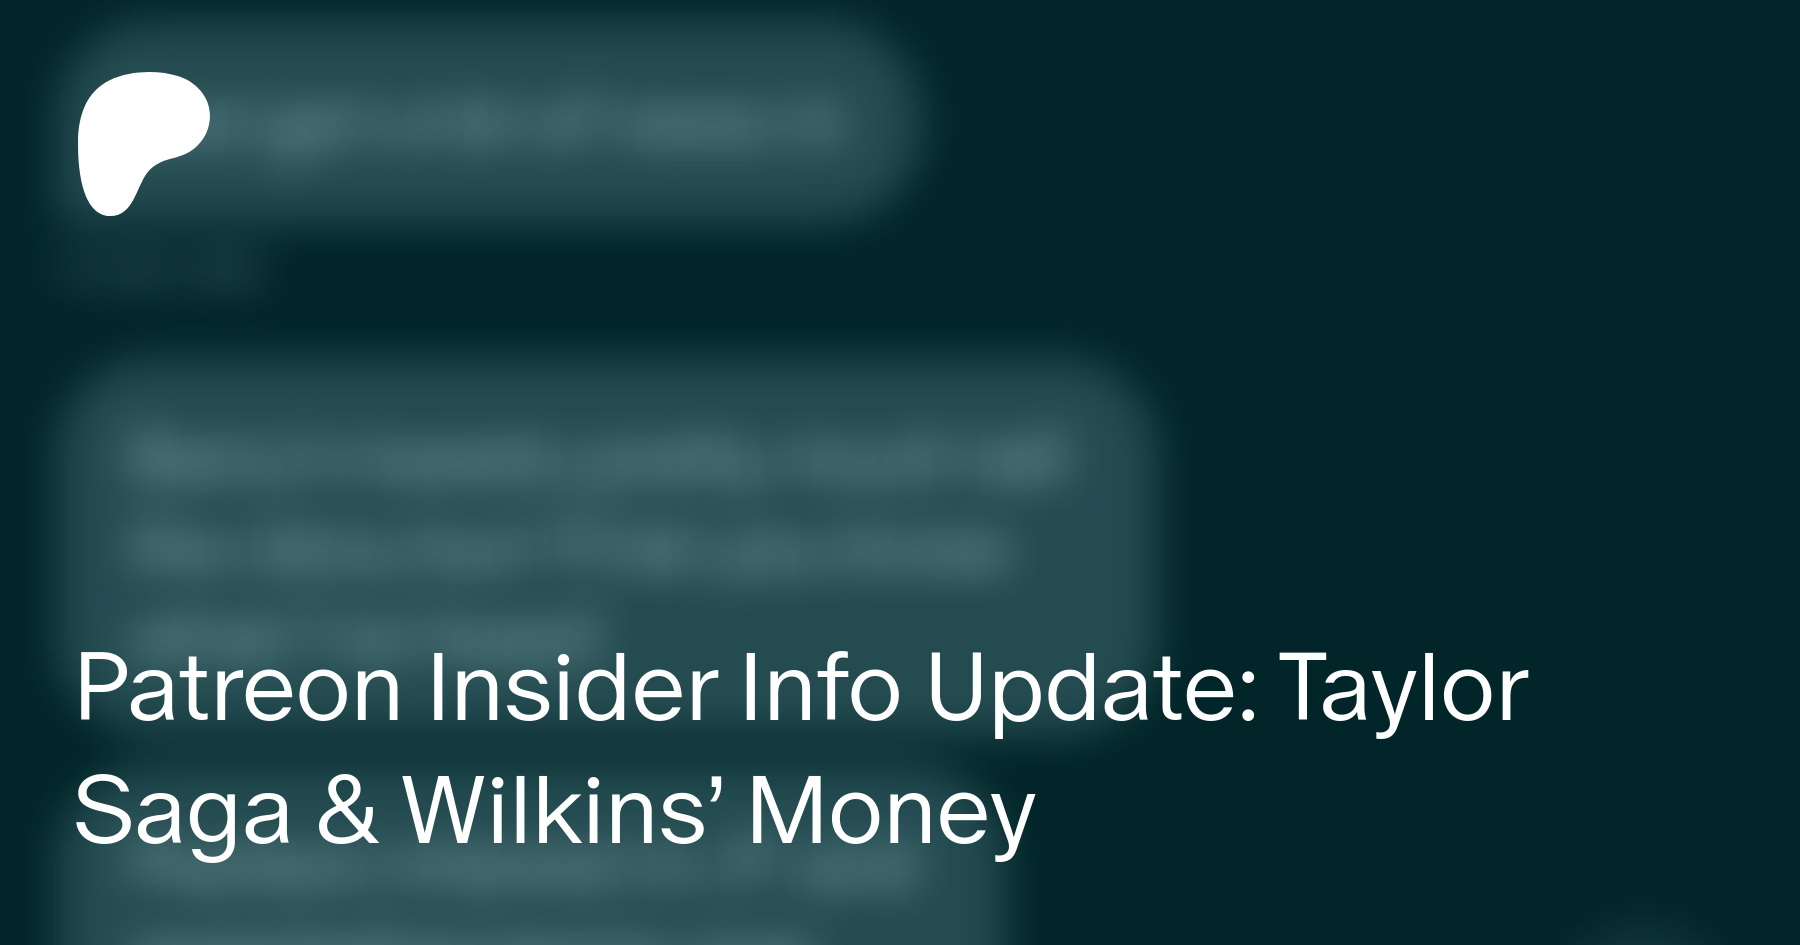 Patreon Insider Info Update: Taylor Saga & Wilkins' Money